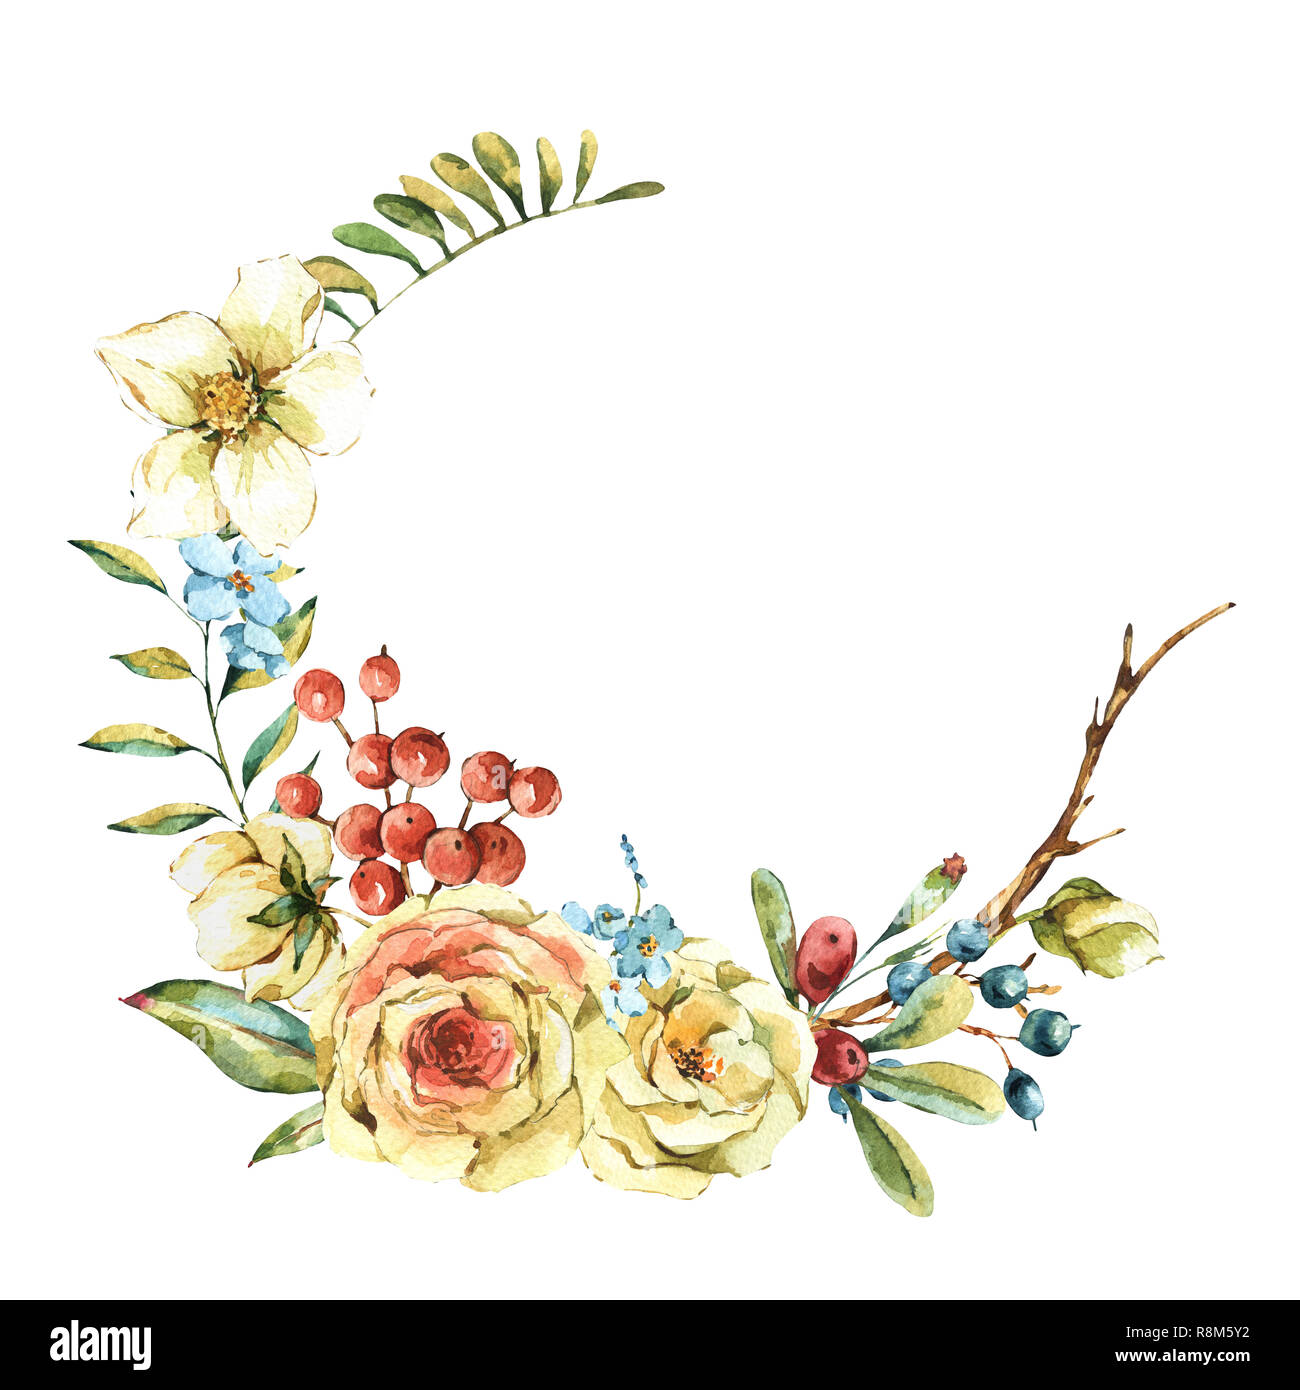 Jolie couronne de fleurs naturelles à l'aquarelle avec white rose, fleurs sauvages, baies, feuilles, isolées vintage frame ronde Banque D'Images